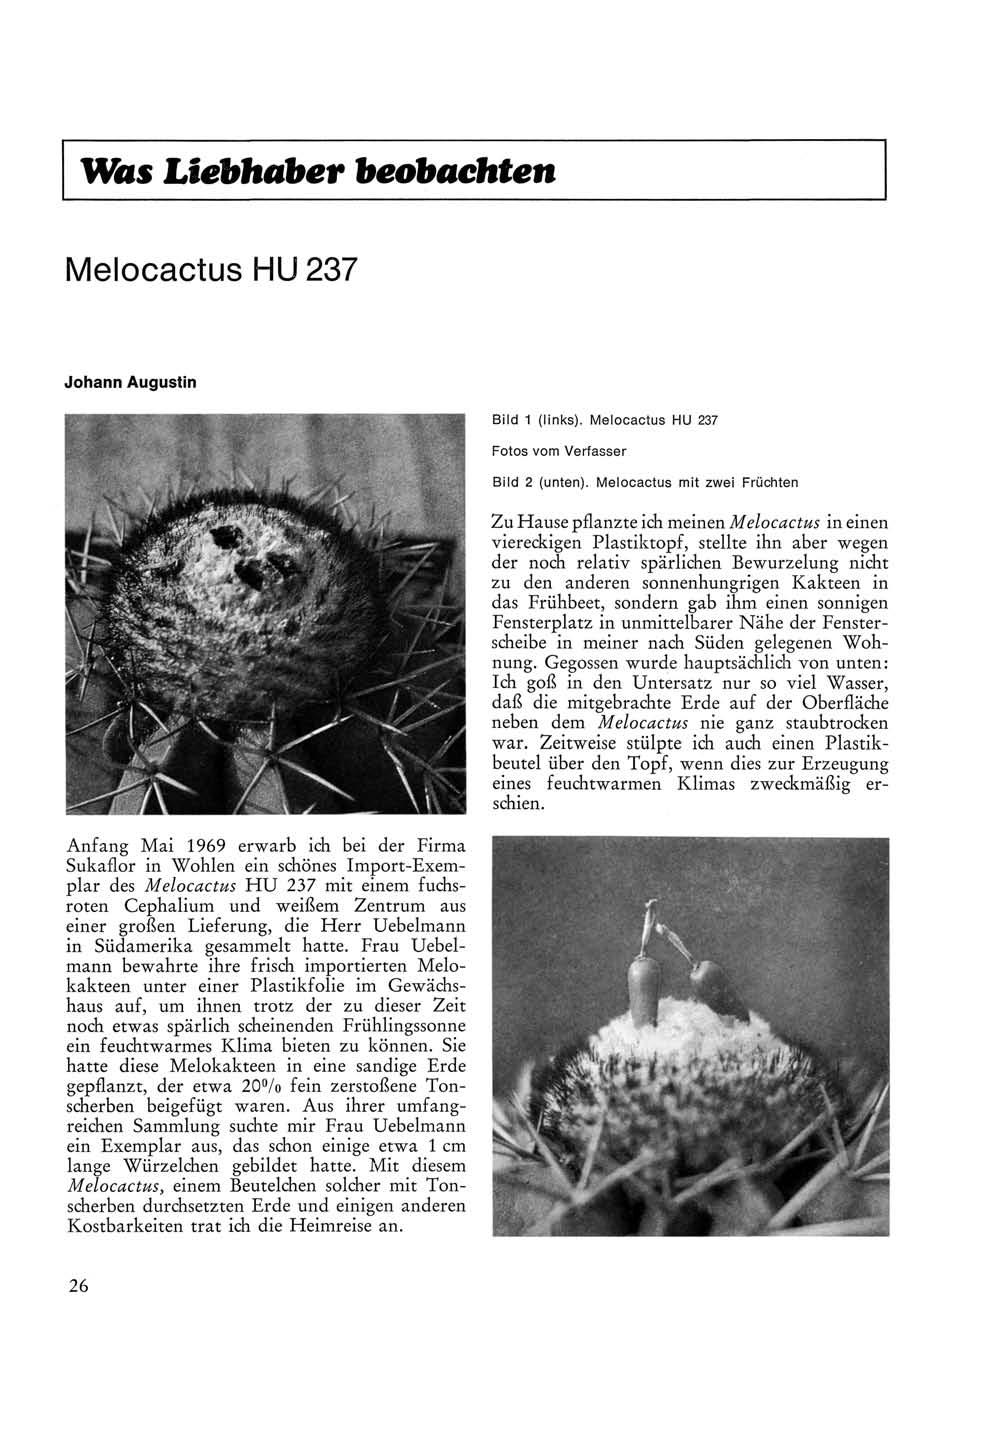 Was Liebhaber beobachten Melocactus HU 237 Johann Augustin Anfang Mai 1969 erwarb ich bei der Firma Sukaflor in Wohlen ein schönes Import-Exemplar des Melocactus HU 237 mit einem fuchsroten Cephalium